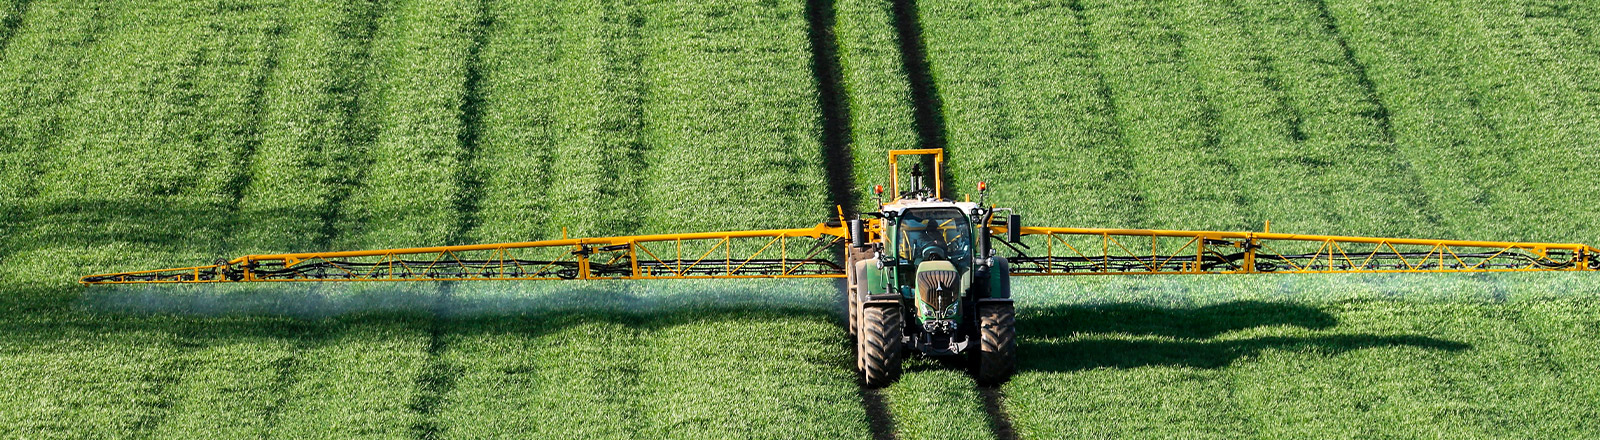 Agrartechnik Traktor mit Pflanzenschutzspritze